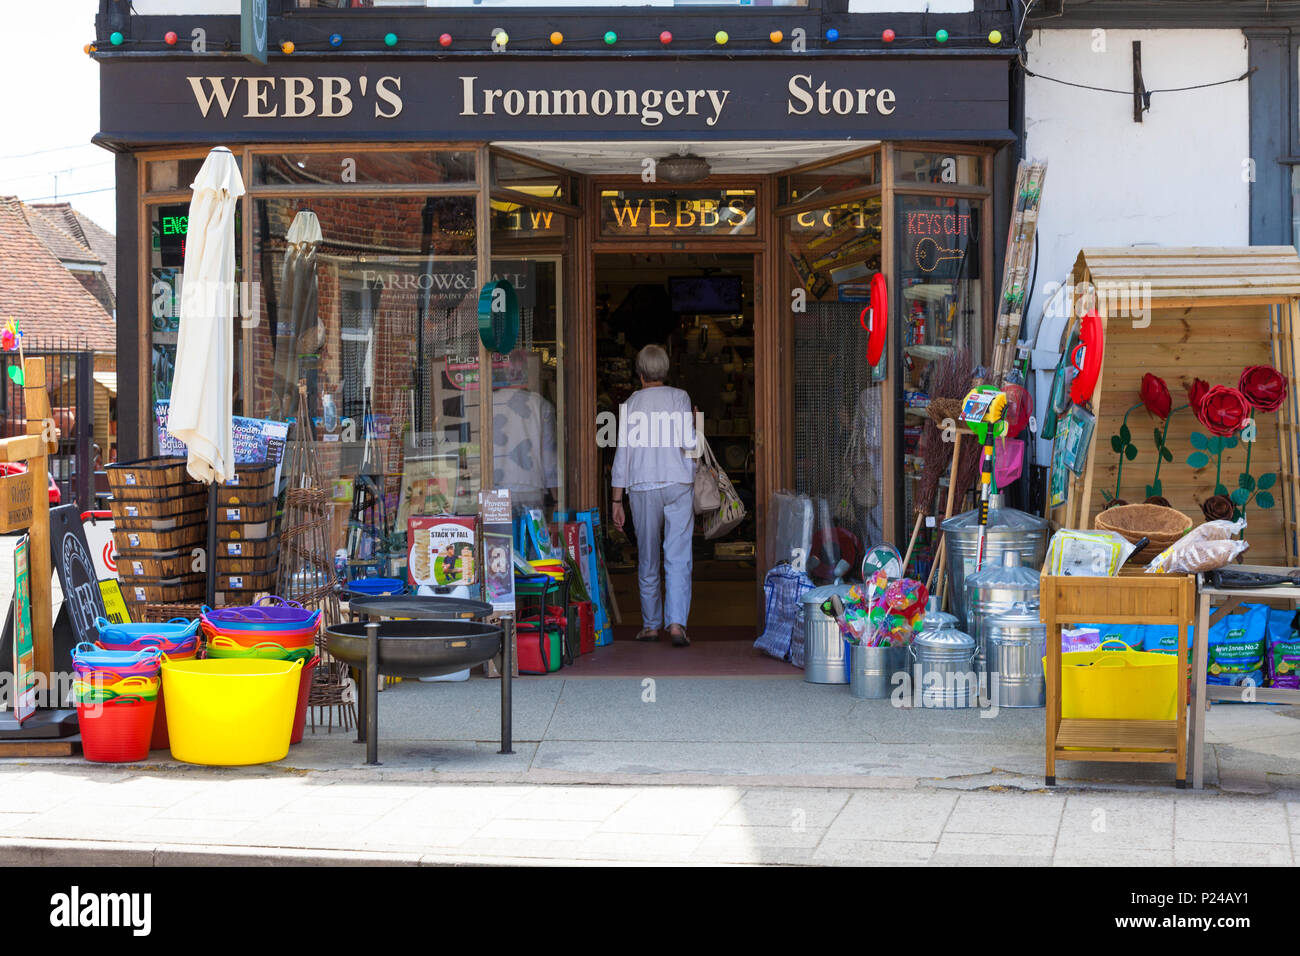 Webbs ironmongery store, shop front, tenterden, kent, uk Stock Photo